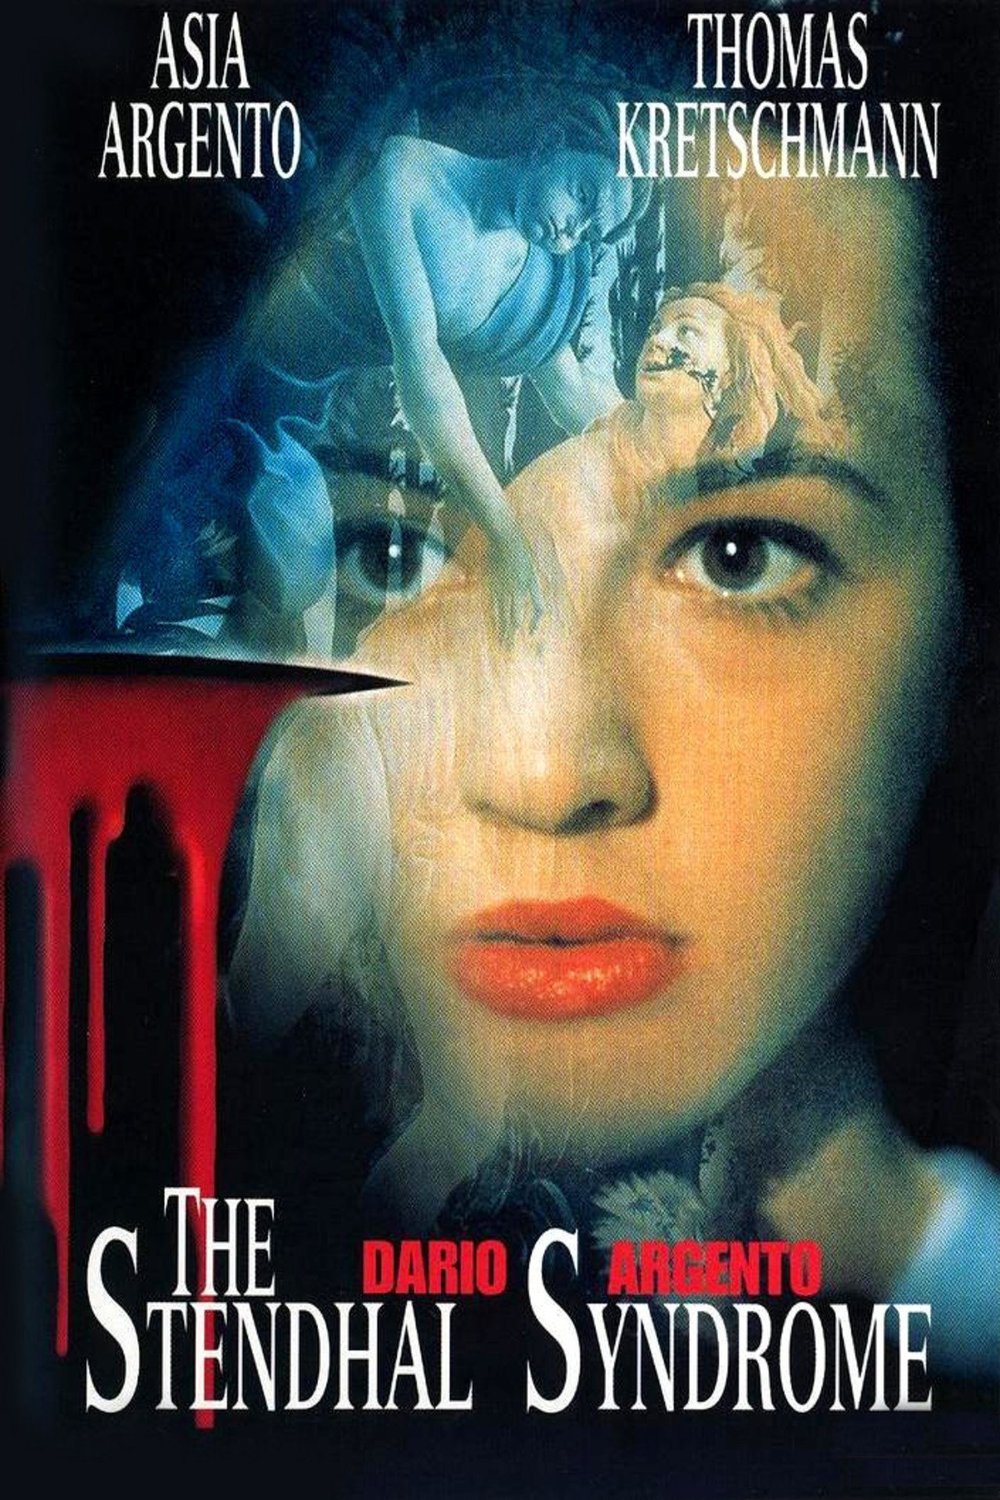 Votre dernier film visionné The-stendhal-syndrome-1996-i-movie-poster